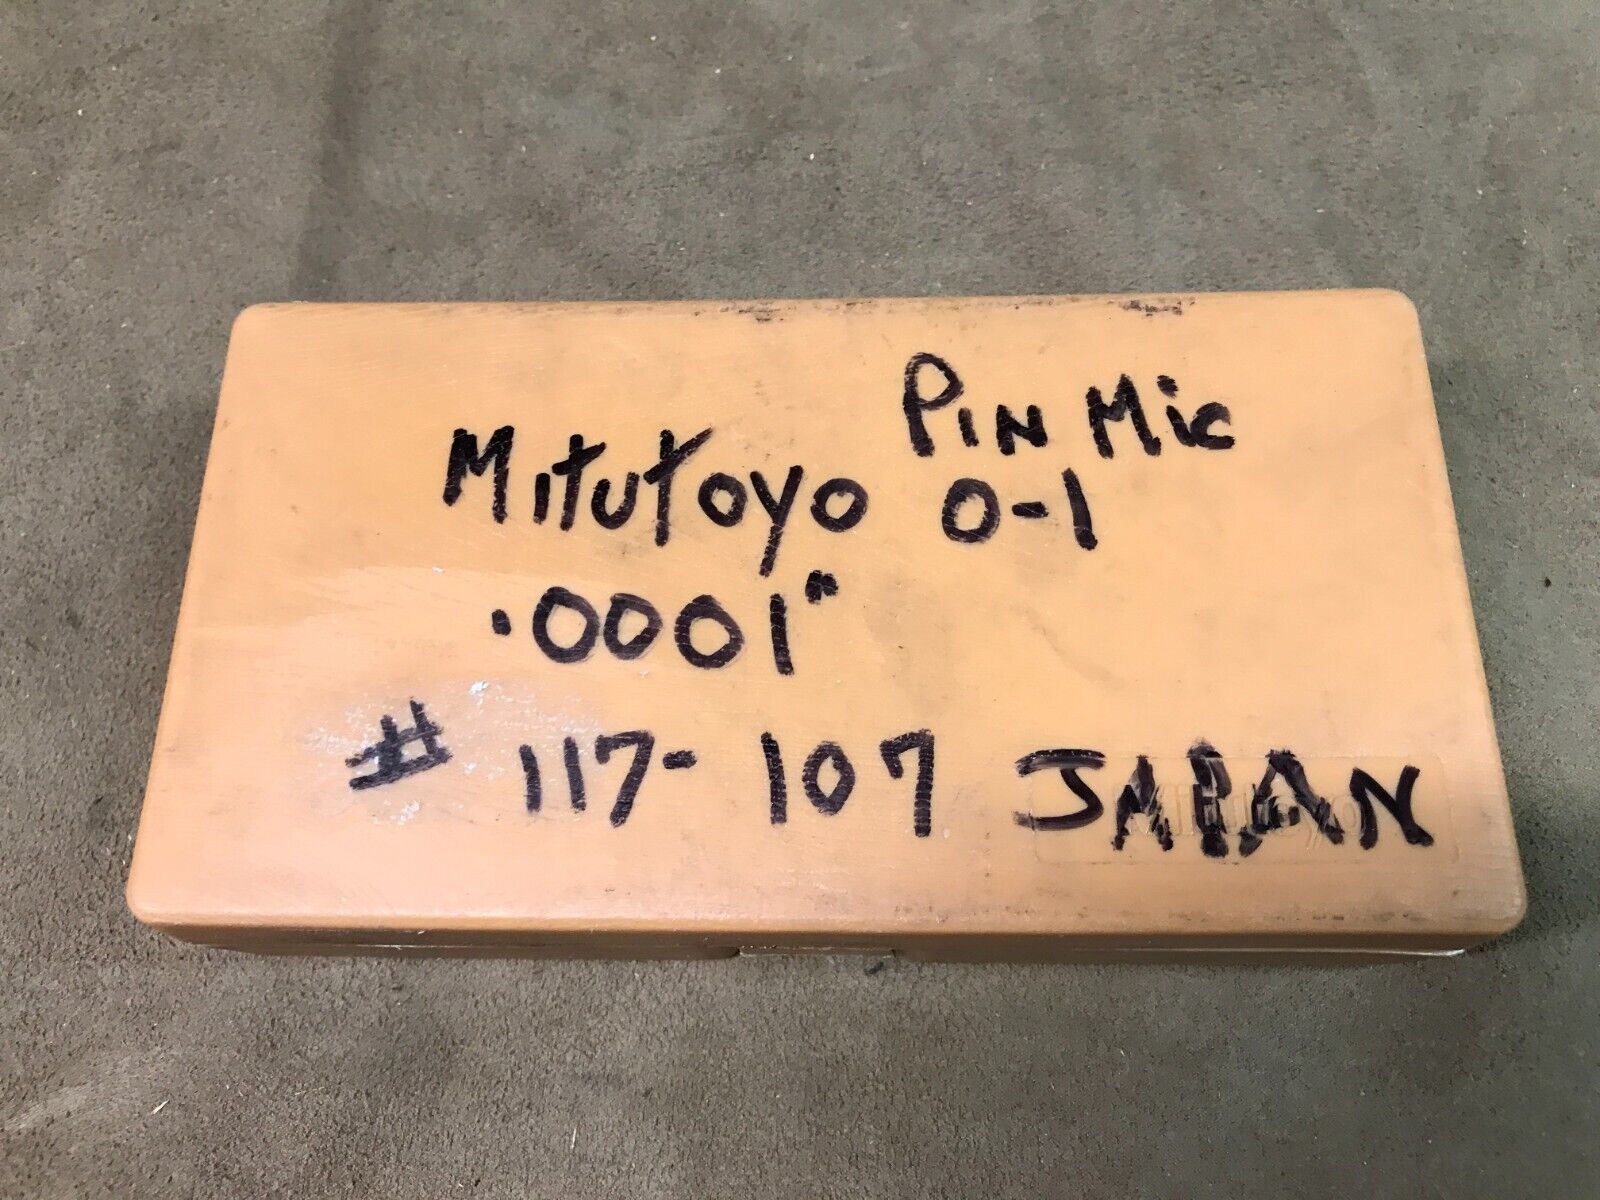 Vintage Mitutoyo #117-107 pin micrometer .0001 range 0-1